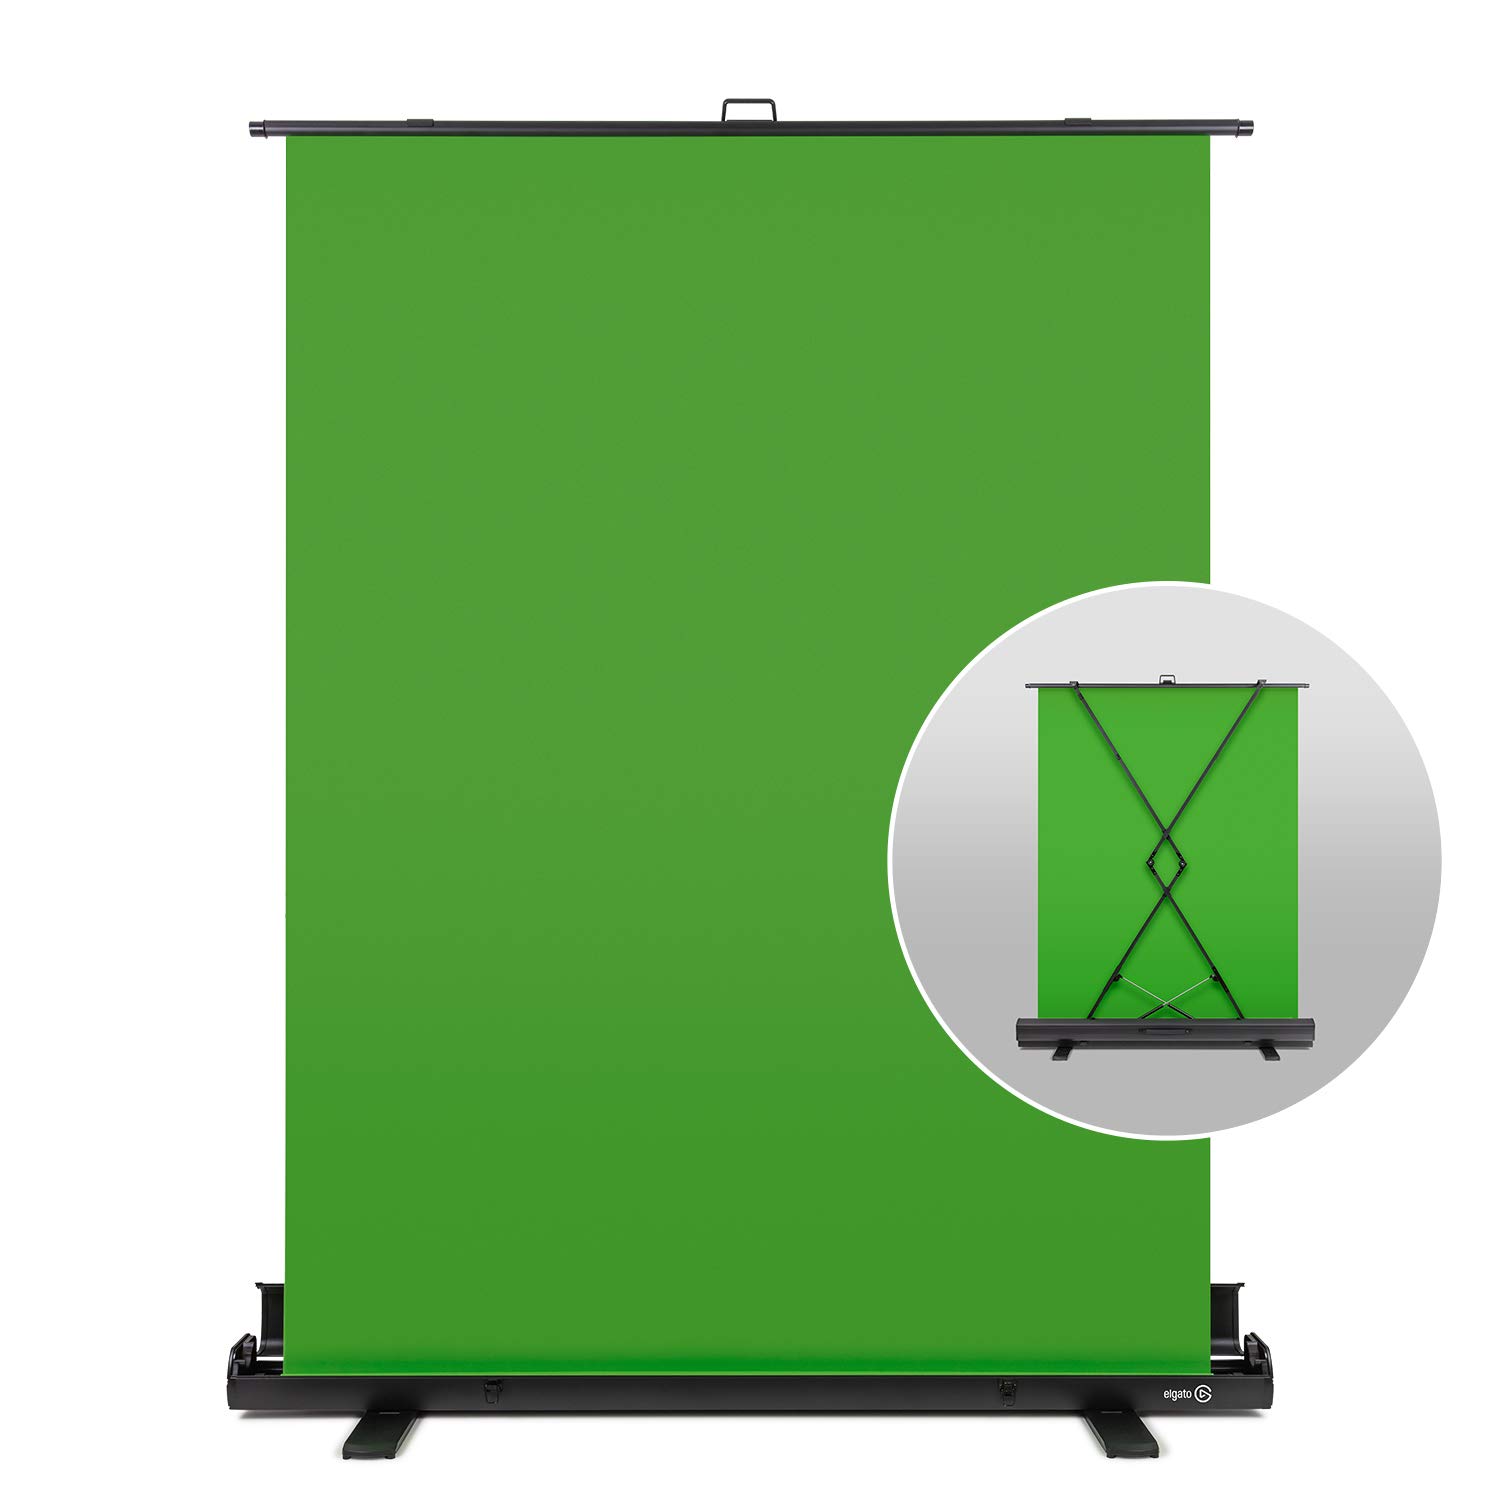 Bạn muốn tạo ra các bức ảnh hoàn hảo mà không bị giới hạn bởi nền xanh? Giải pháp hoàn hảo đến từ Green Background Remover sẽ giúp bạn dễ dàng loại bỏ nền xanh và thêm vào bất kỳ hình nền nào bạn muốn.